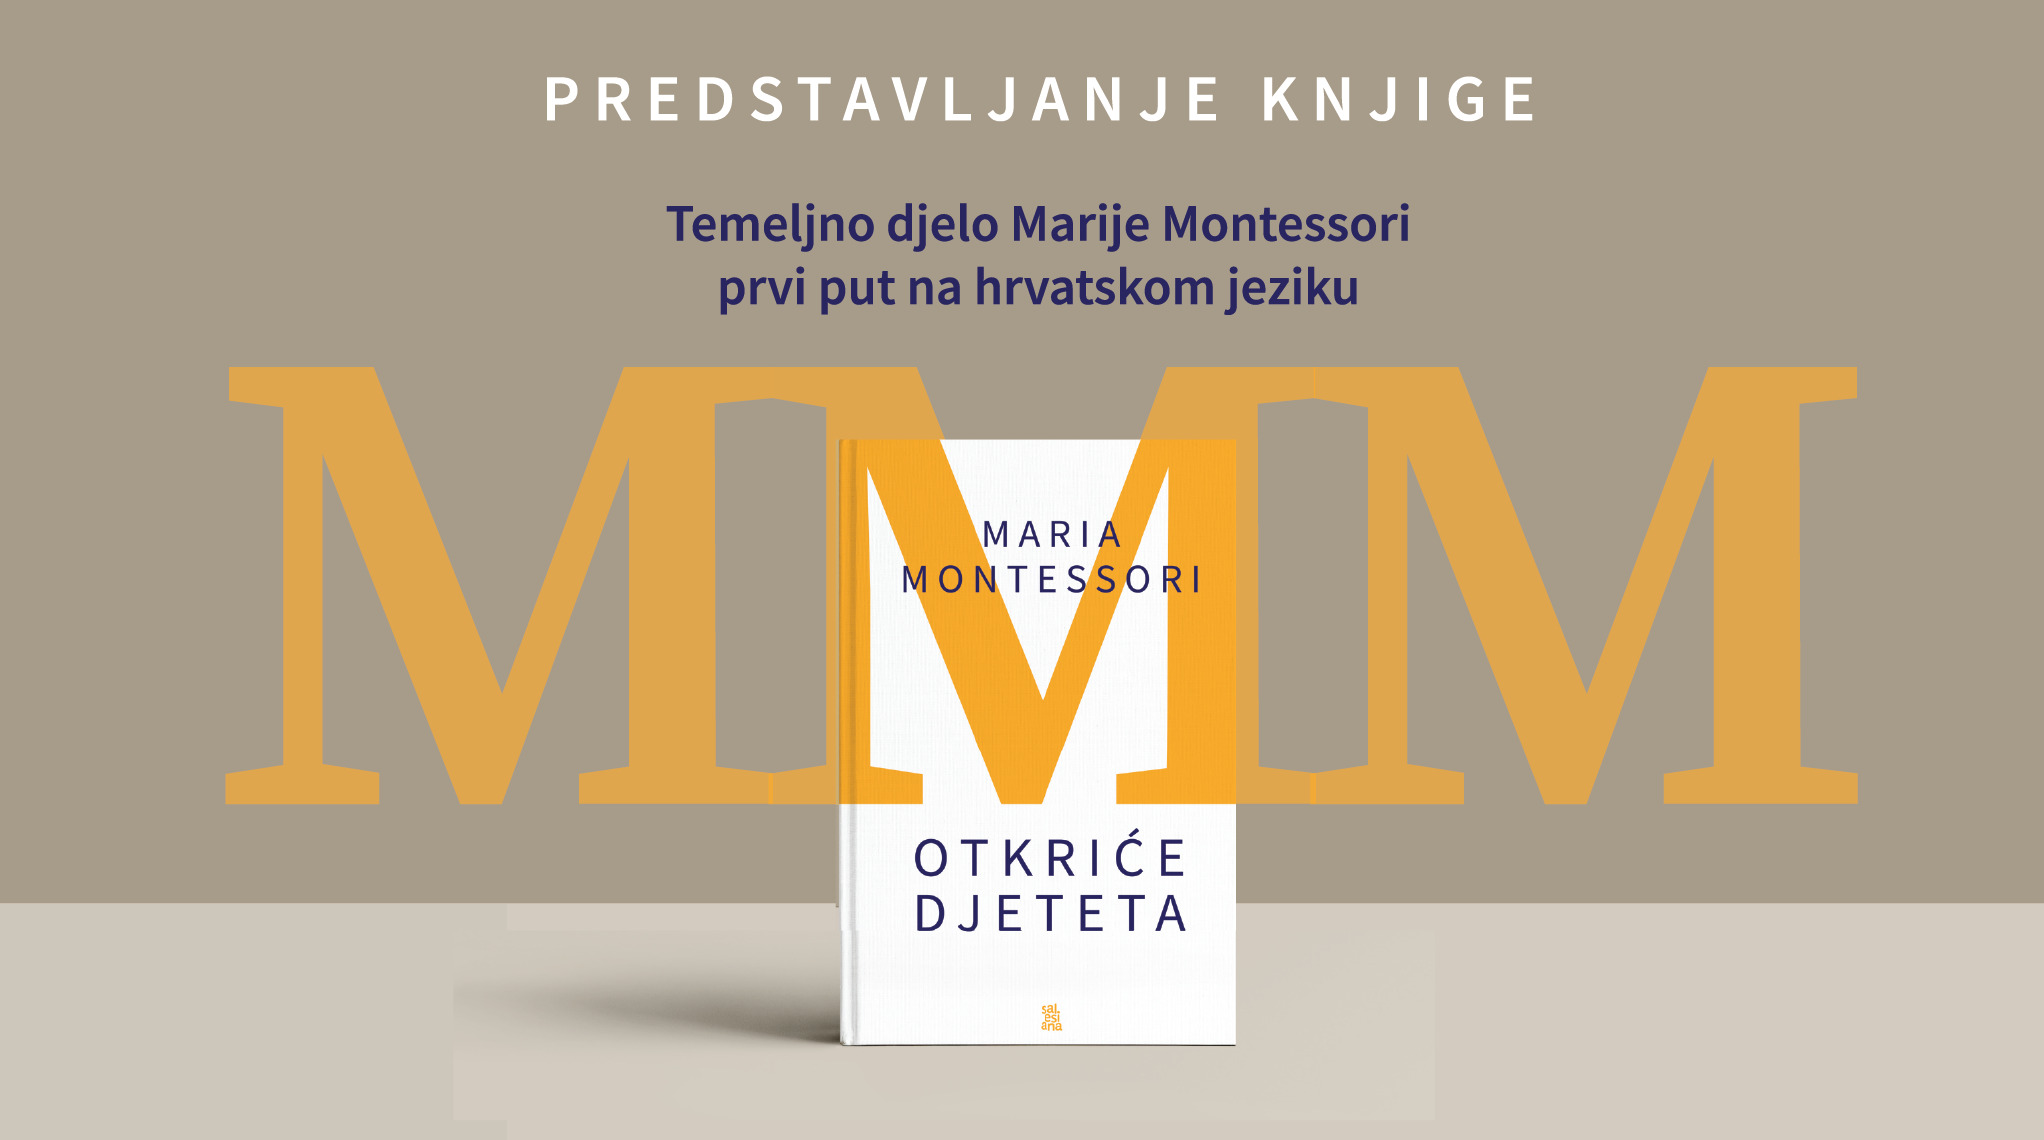 Predstavljanje knjige Otkriće djeteta Marije Montessori